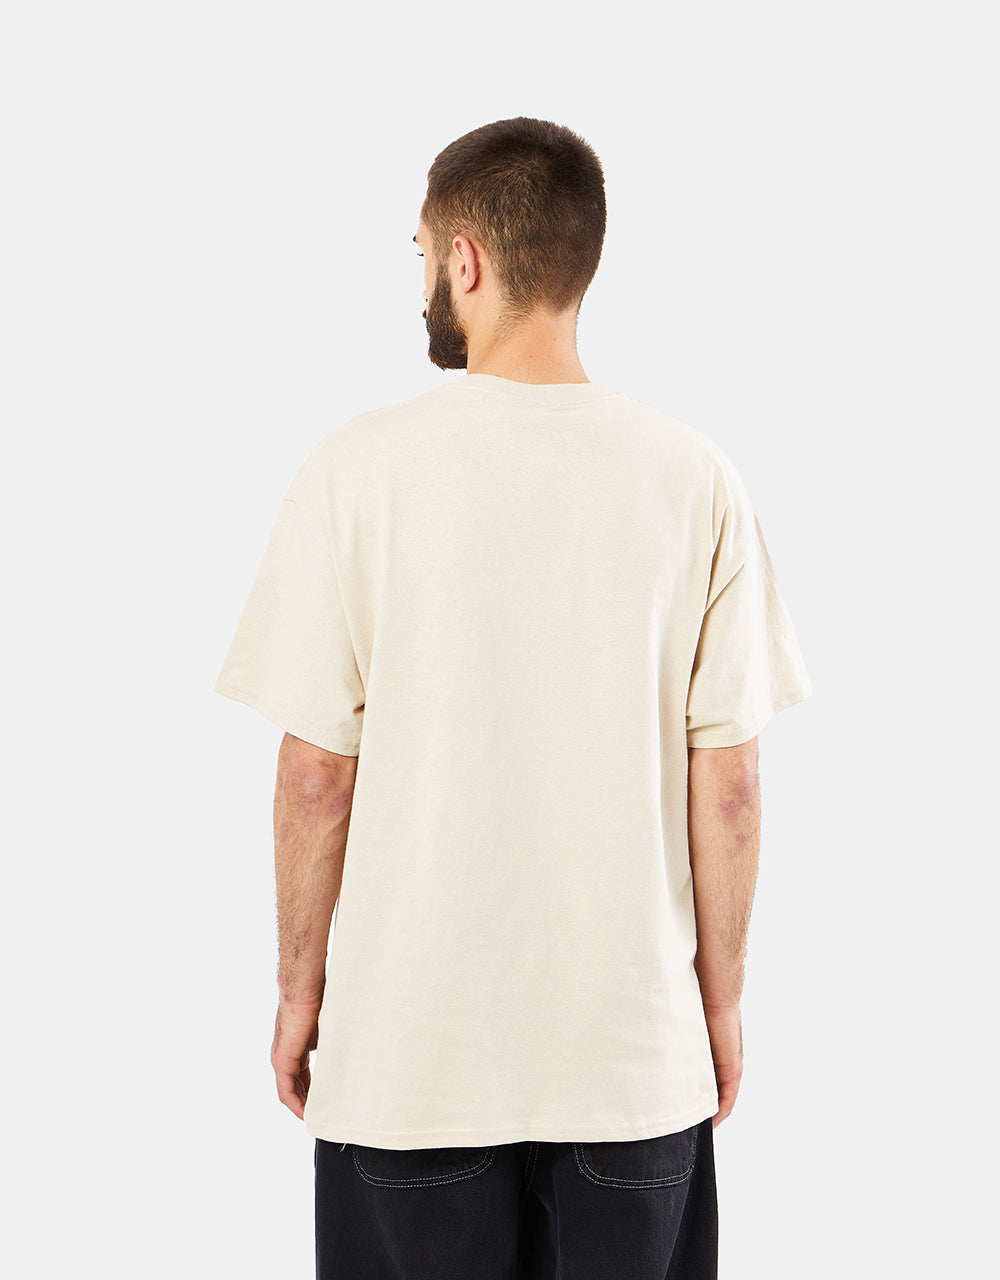 Playdude Vesuvius T-Shirt - Sand